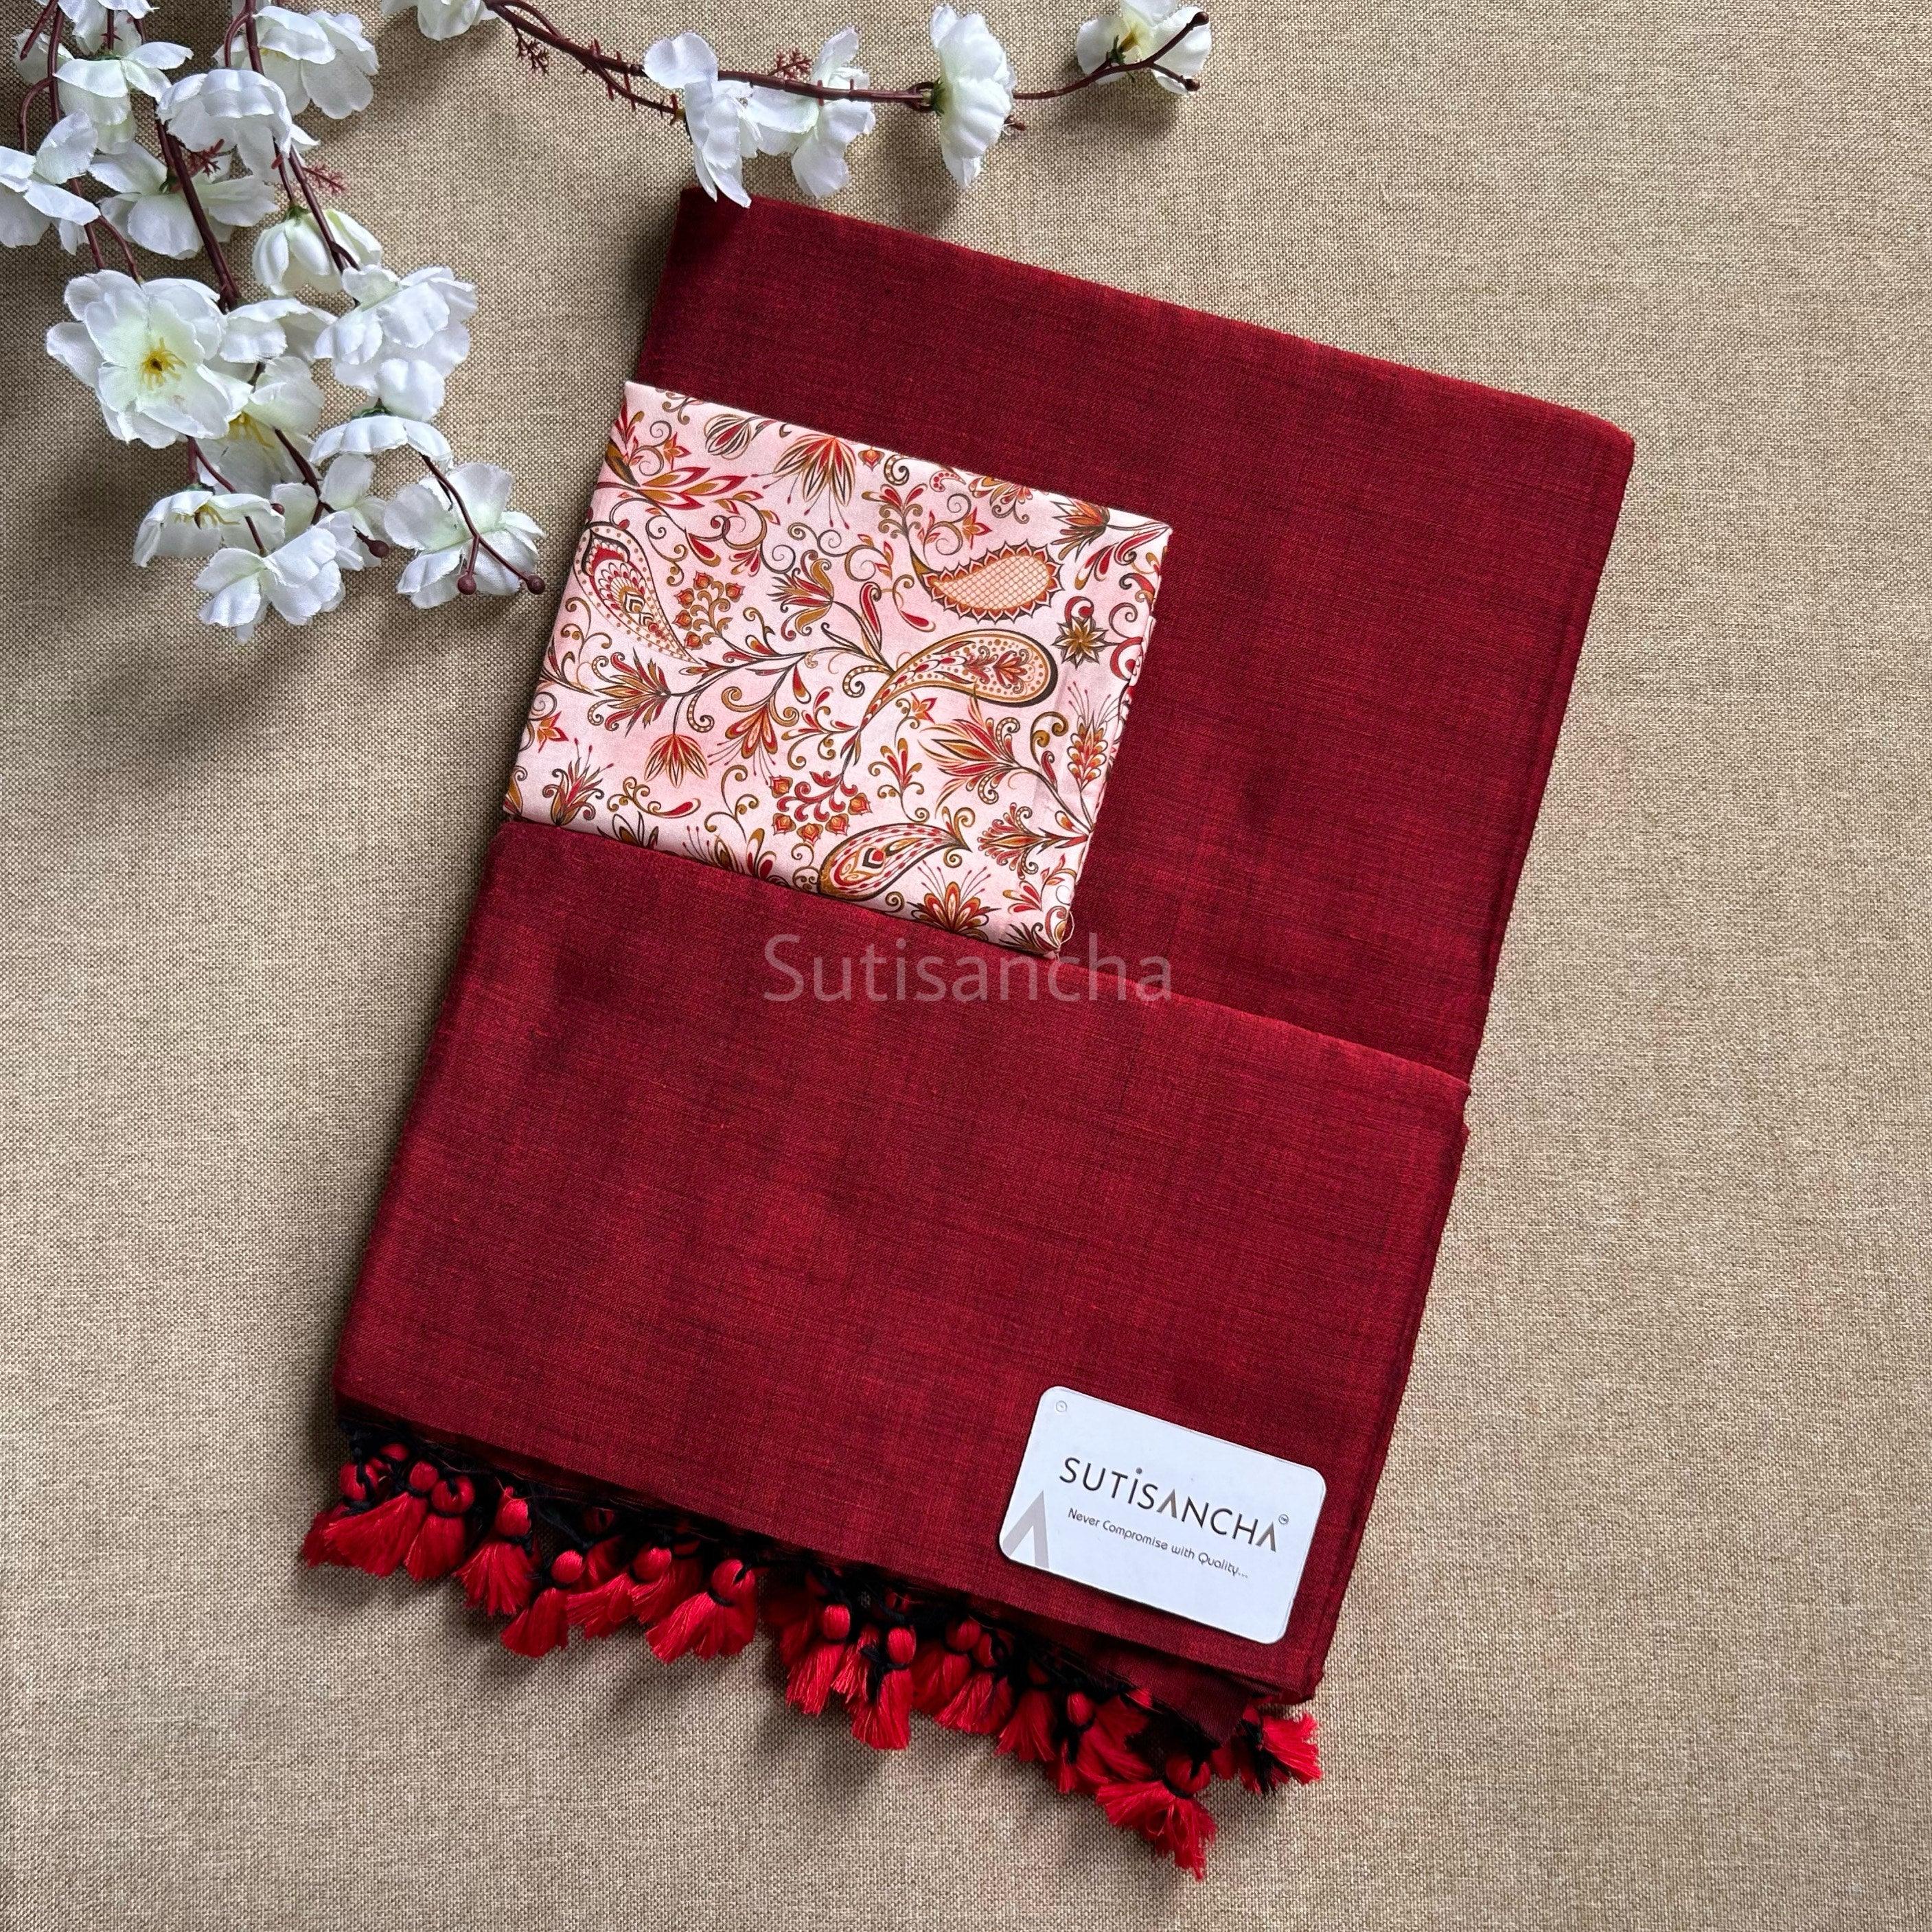 Sutisancha CherryRed Handloom Cotton Saree - Suti Sancha